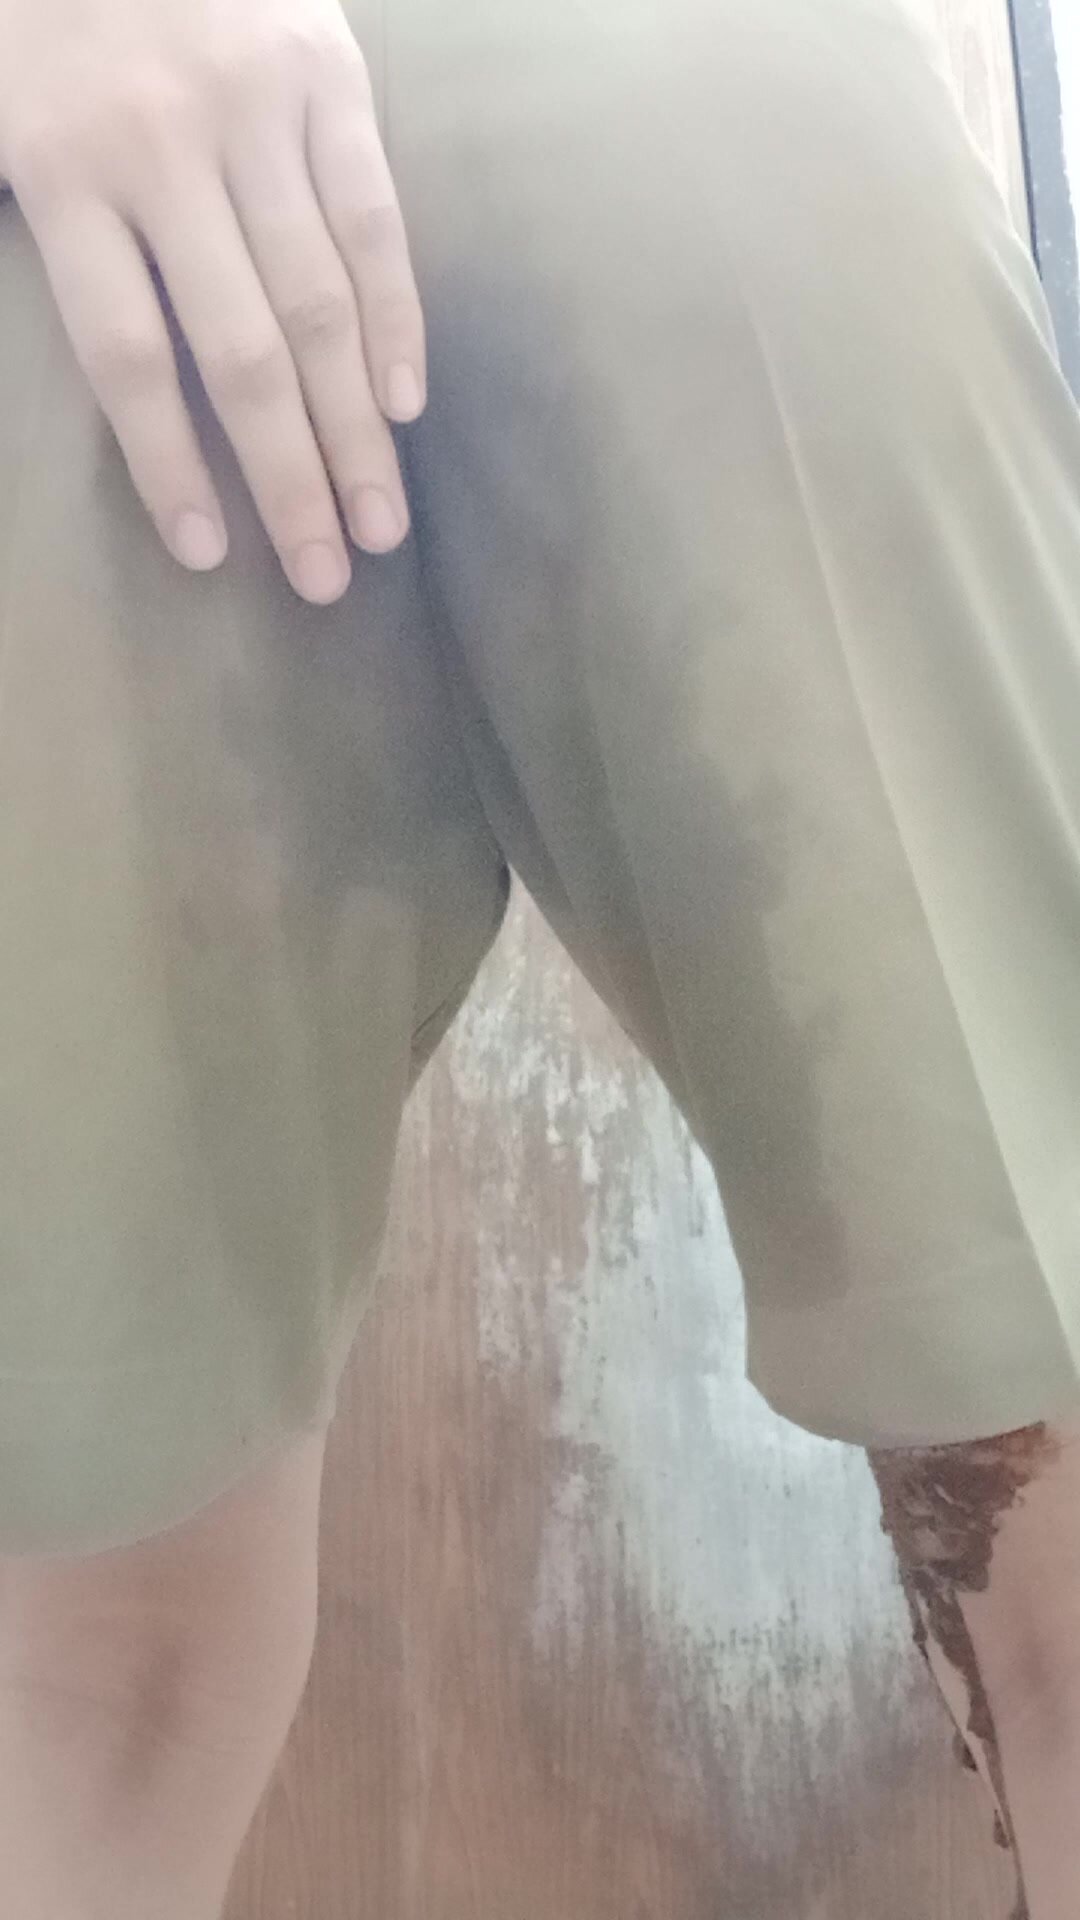 Shit Fart in khaki school pants